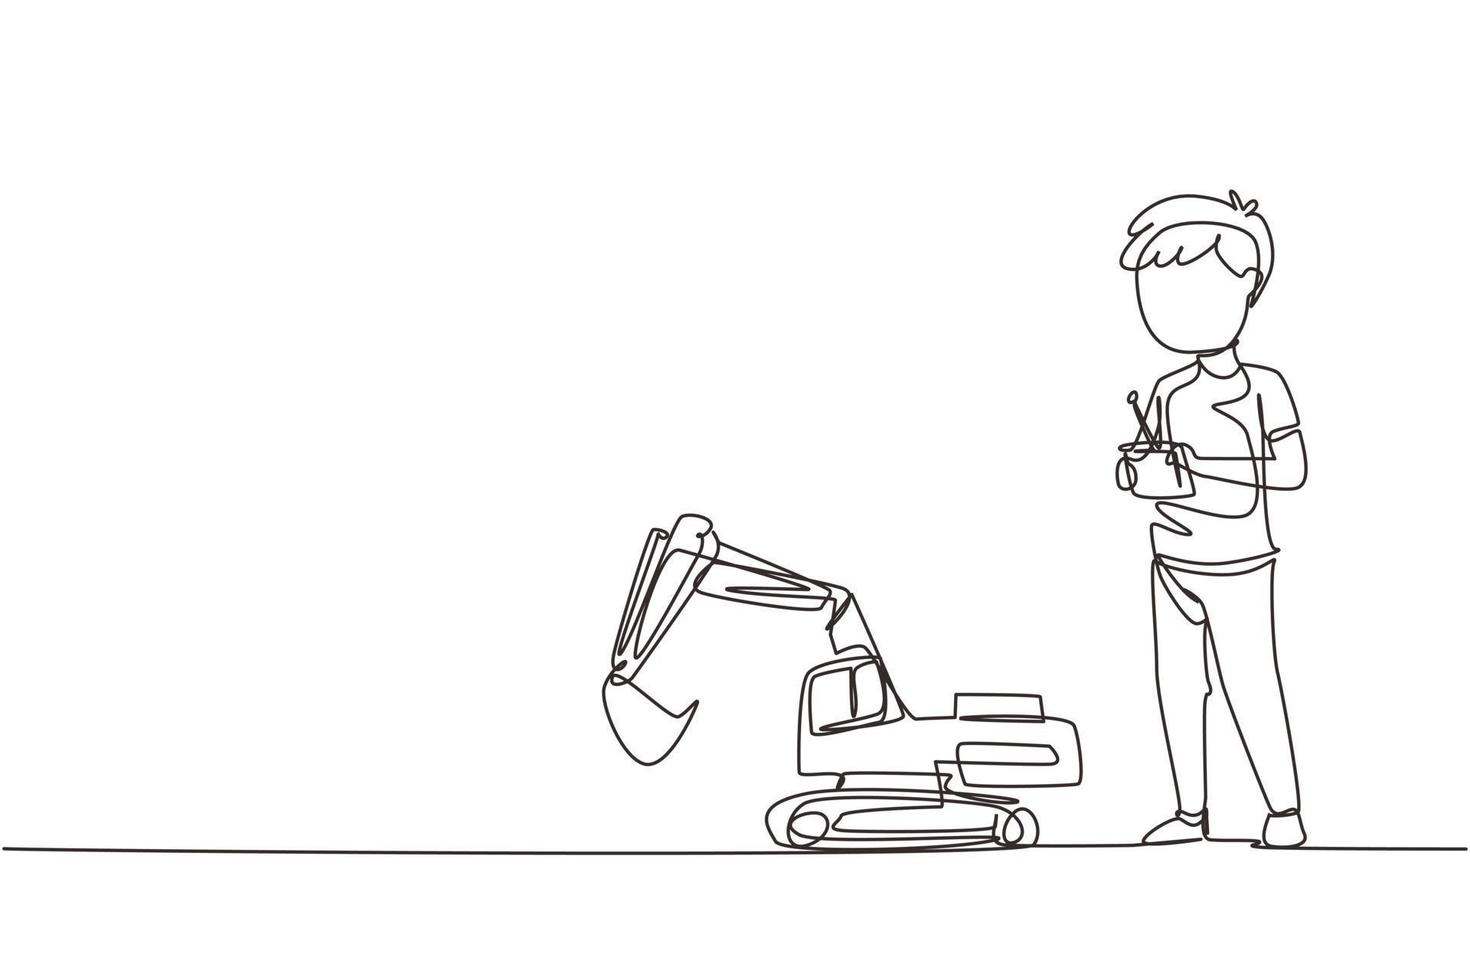 Single Continuous Line Drawing Boy, der mit ferngesteuertem Baggerspielzeug spielt. kinder spielen mit elektronischem spielzeugbagger mit fernbedienung in den händen. einzeilige Grafikdesign-Vektorillustration vektor